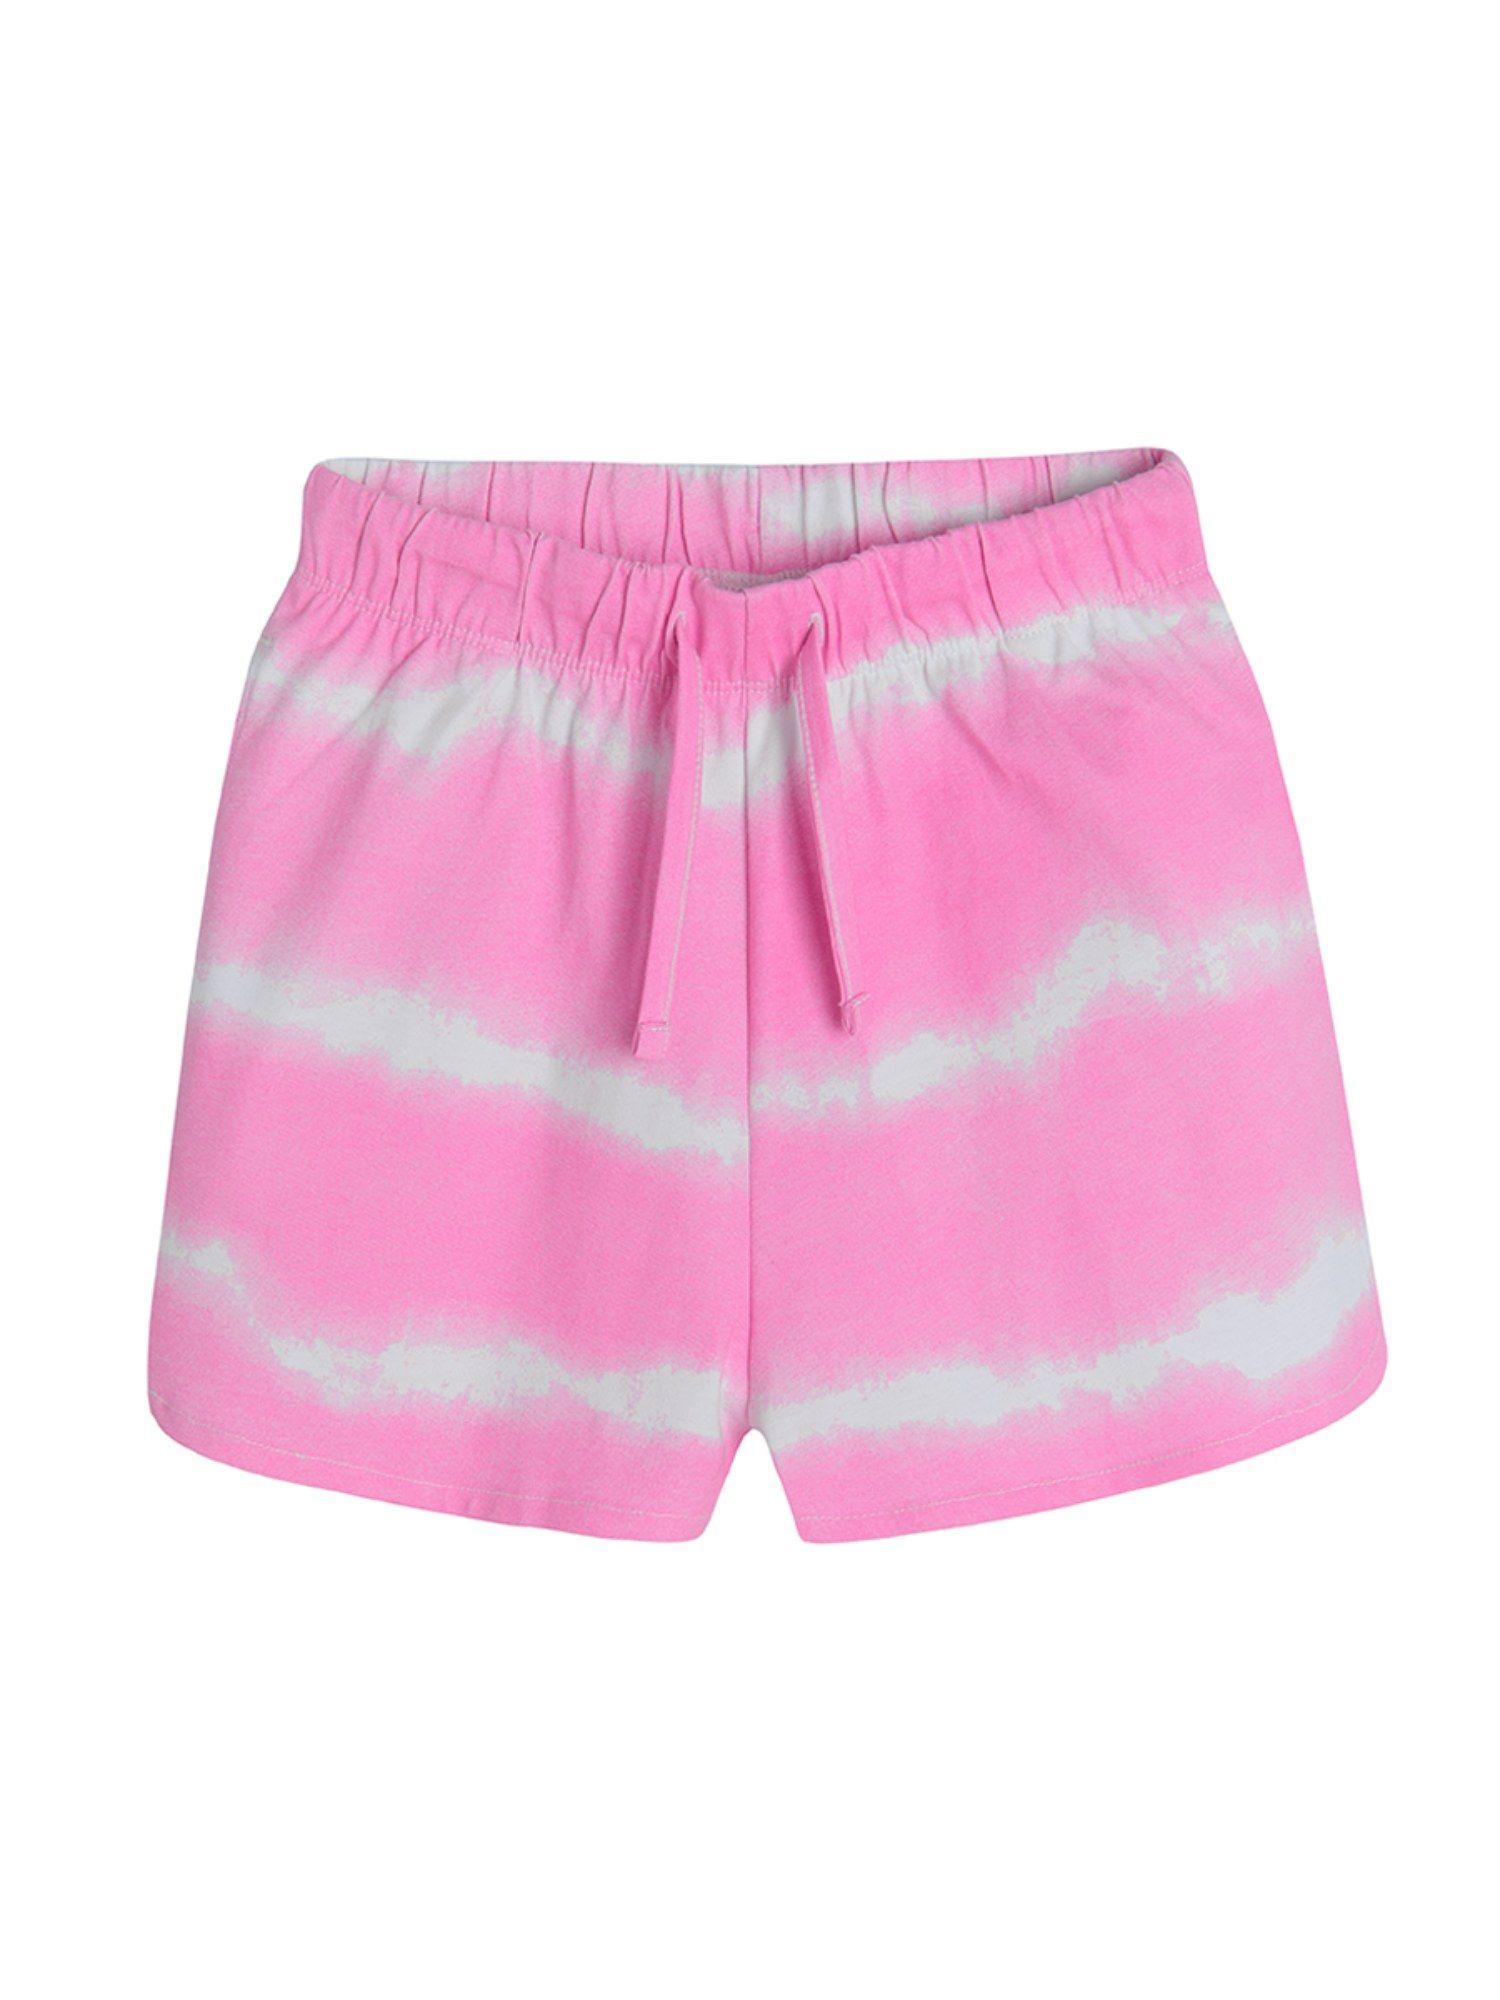 Smyk Girls Pink Tie & Dye Shorts